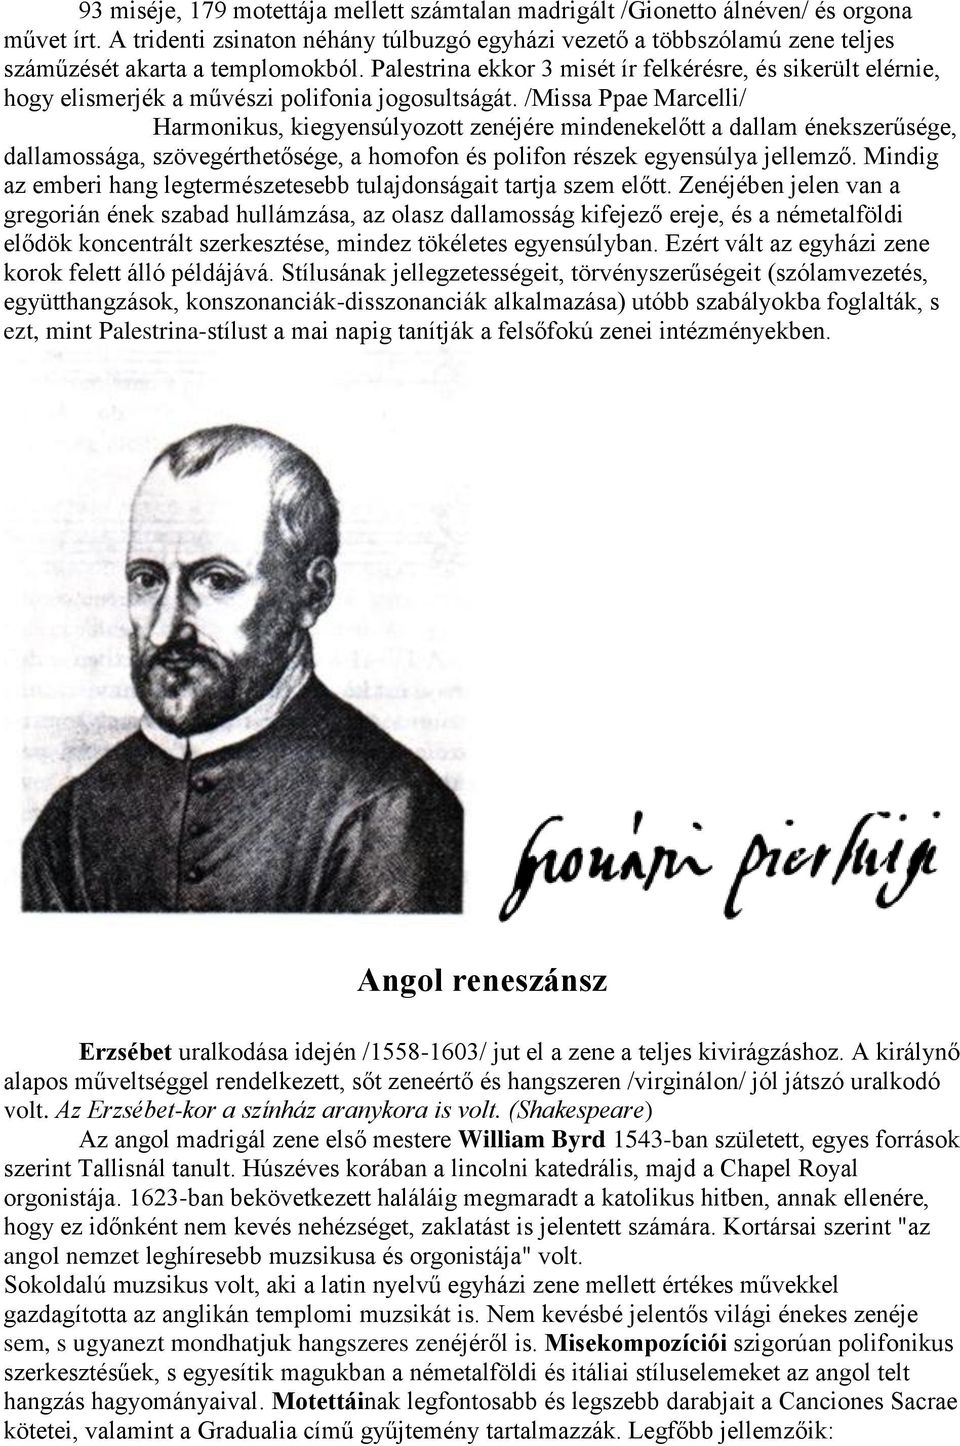 Palestrina ekkor 3 misét ír felkérésre, és sikerült elérnie, hogy elismerjék a művészi polifonia jogosultságát.